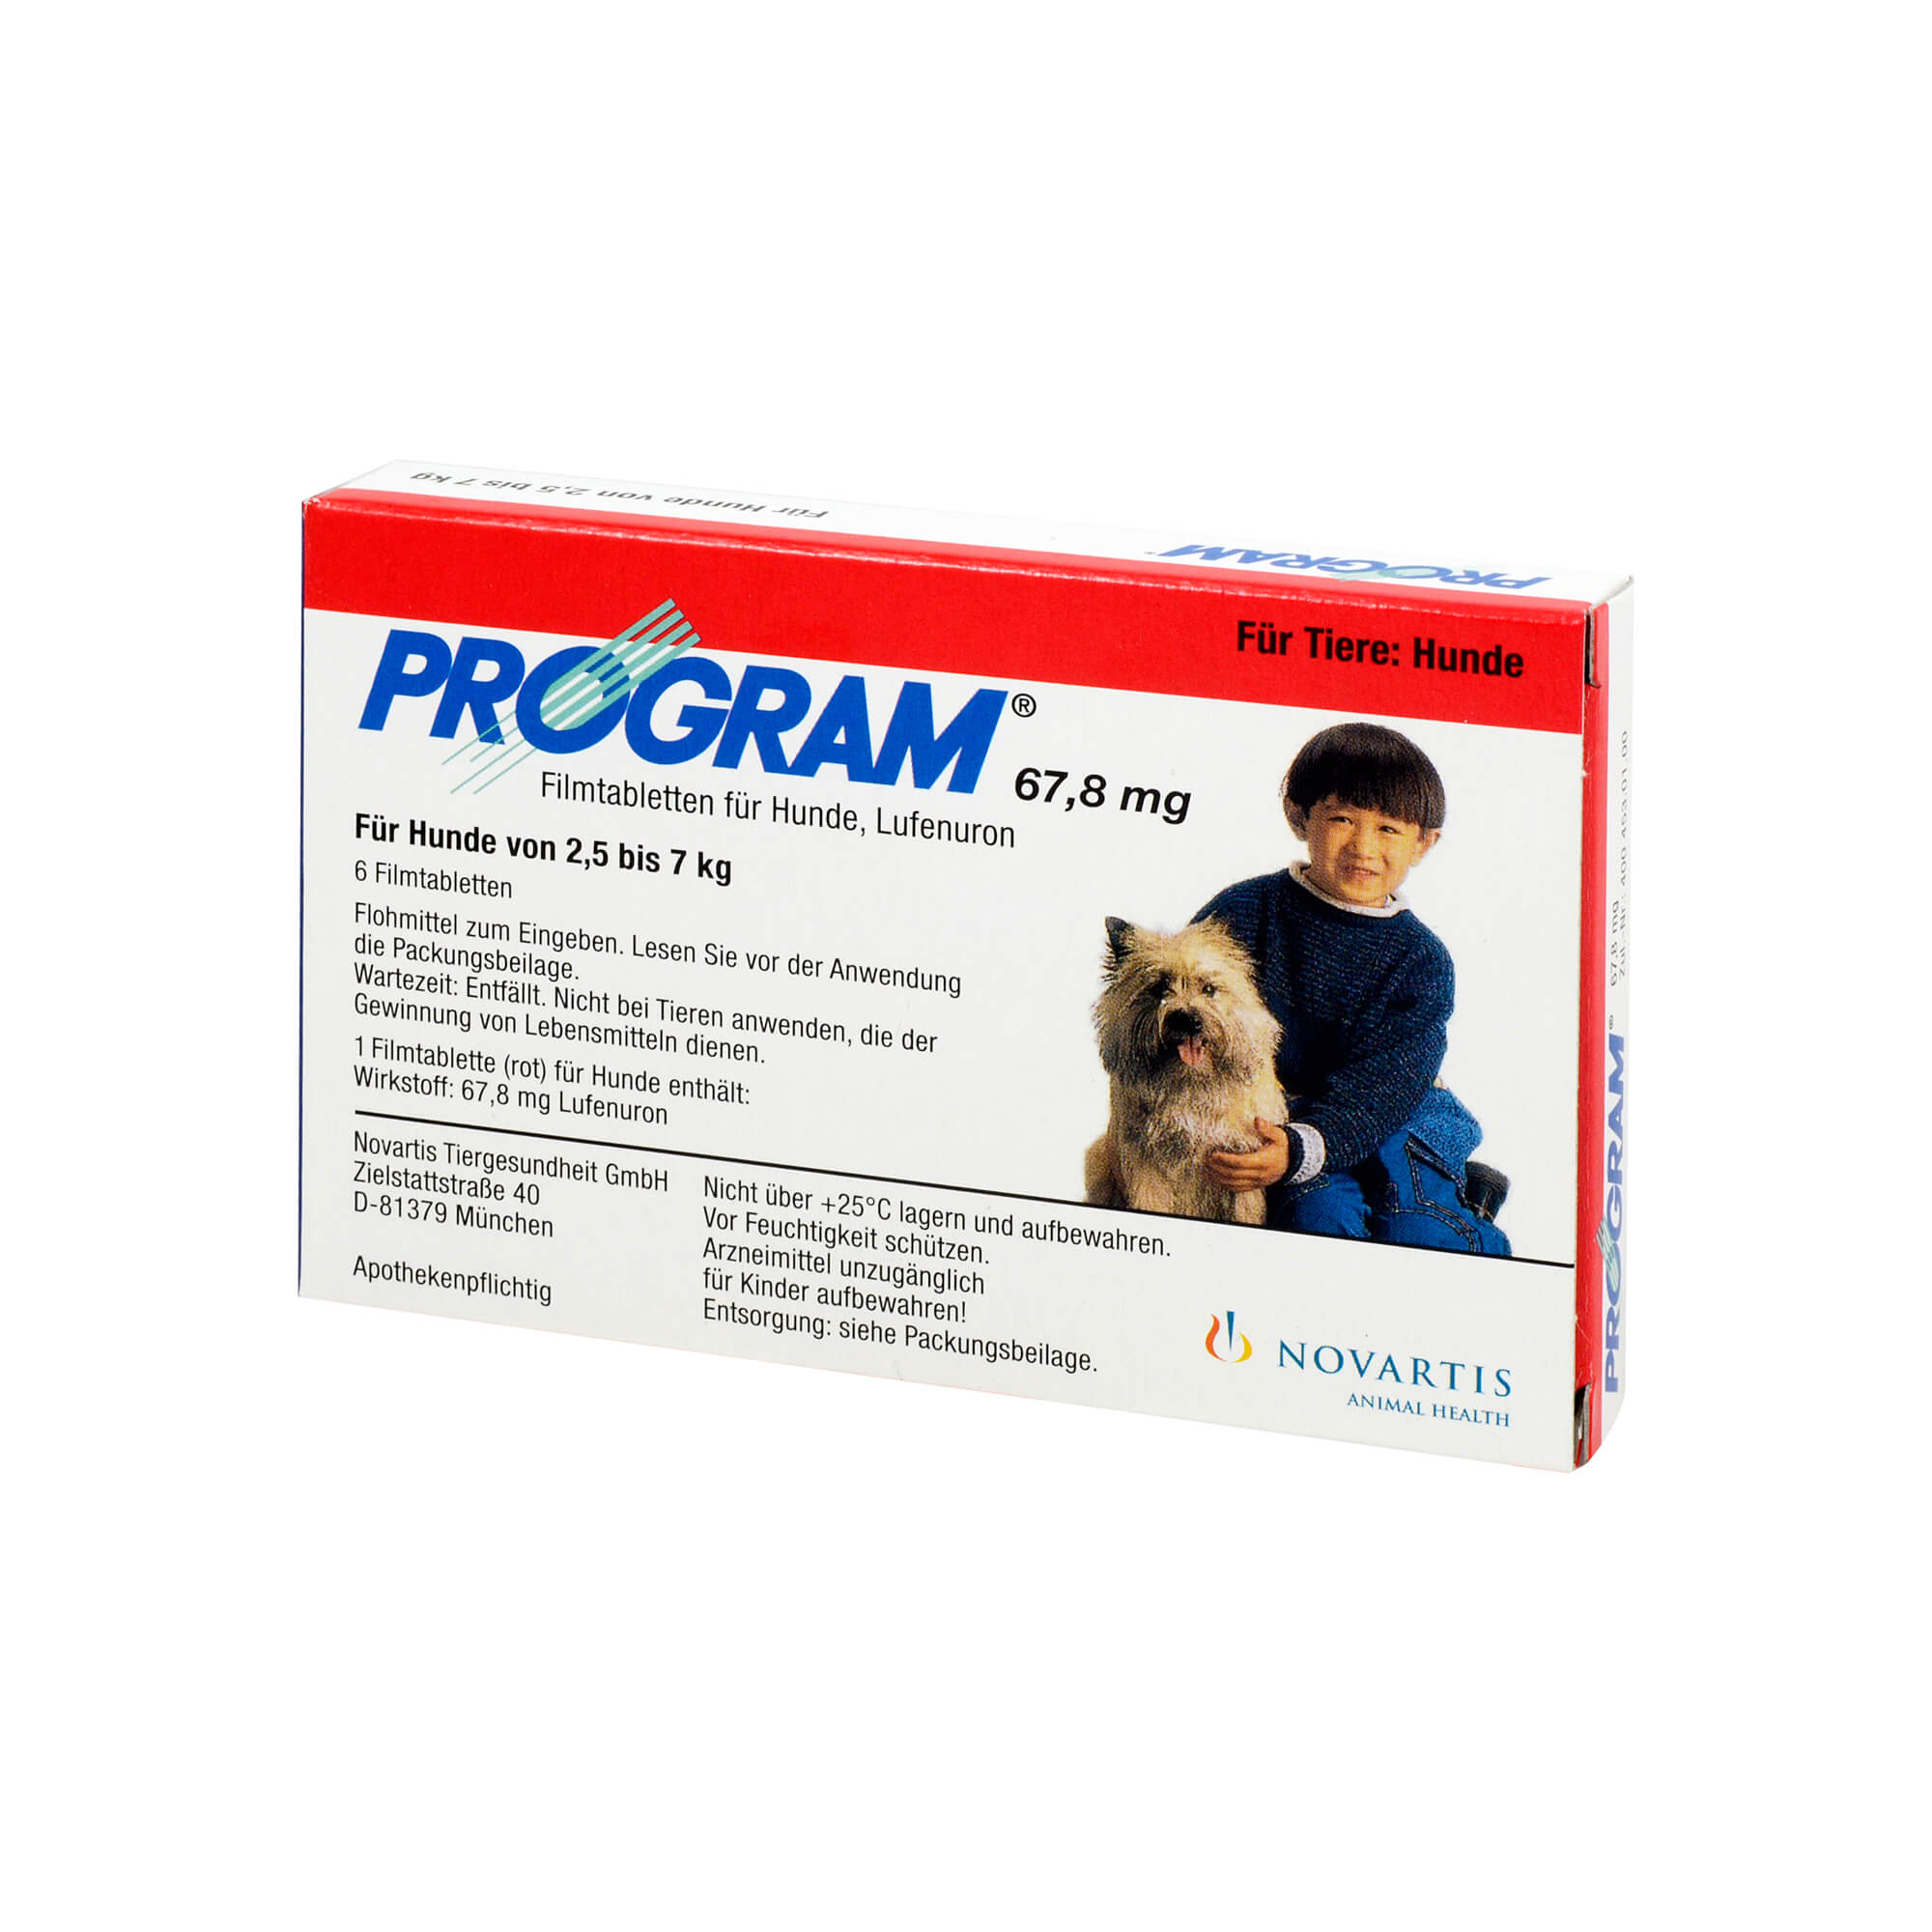 Zur Therapie und Prophylaxe von Flohinfestationen bei Hunden. Program 67,8 mg ist wirksam gegen die unreifen Entwicklungsstadien (präadulte Stadien) des Hundeflohs Ctenocephalides canis und des Katz